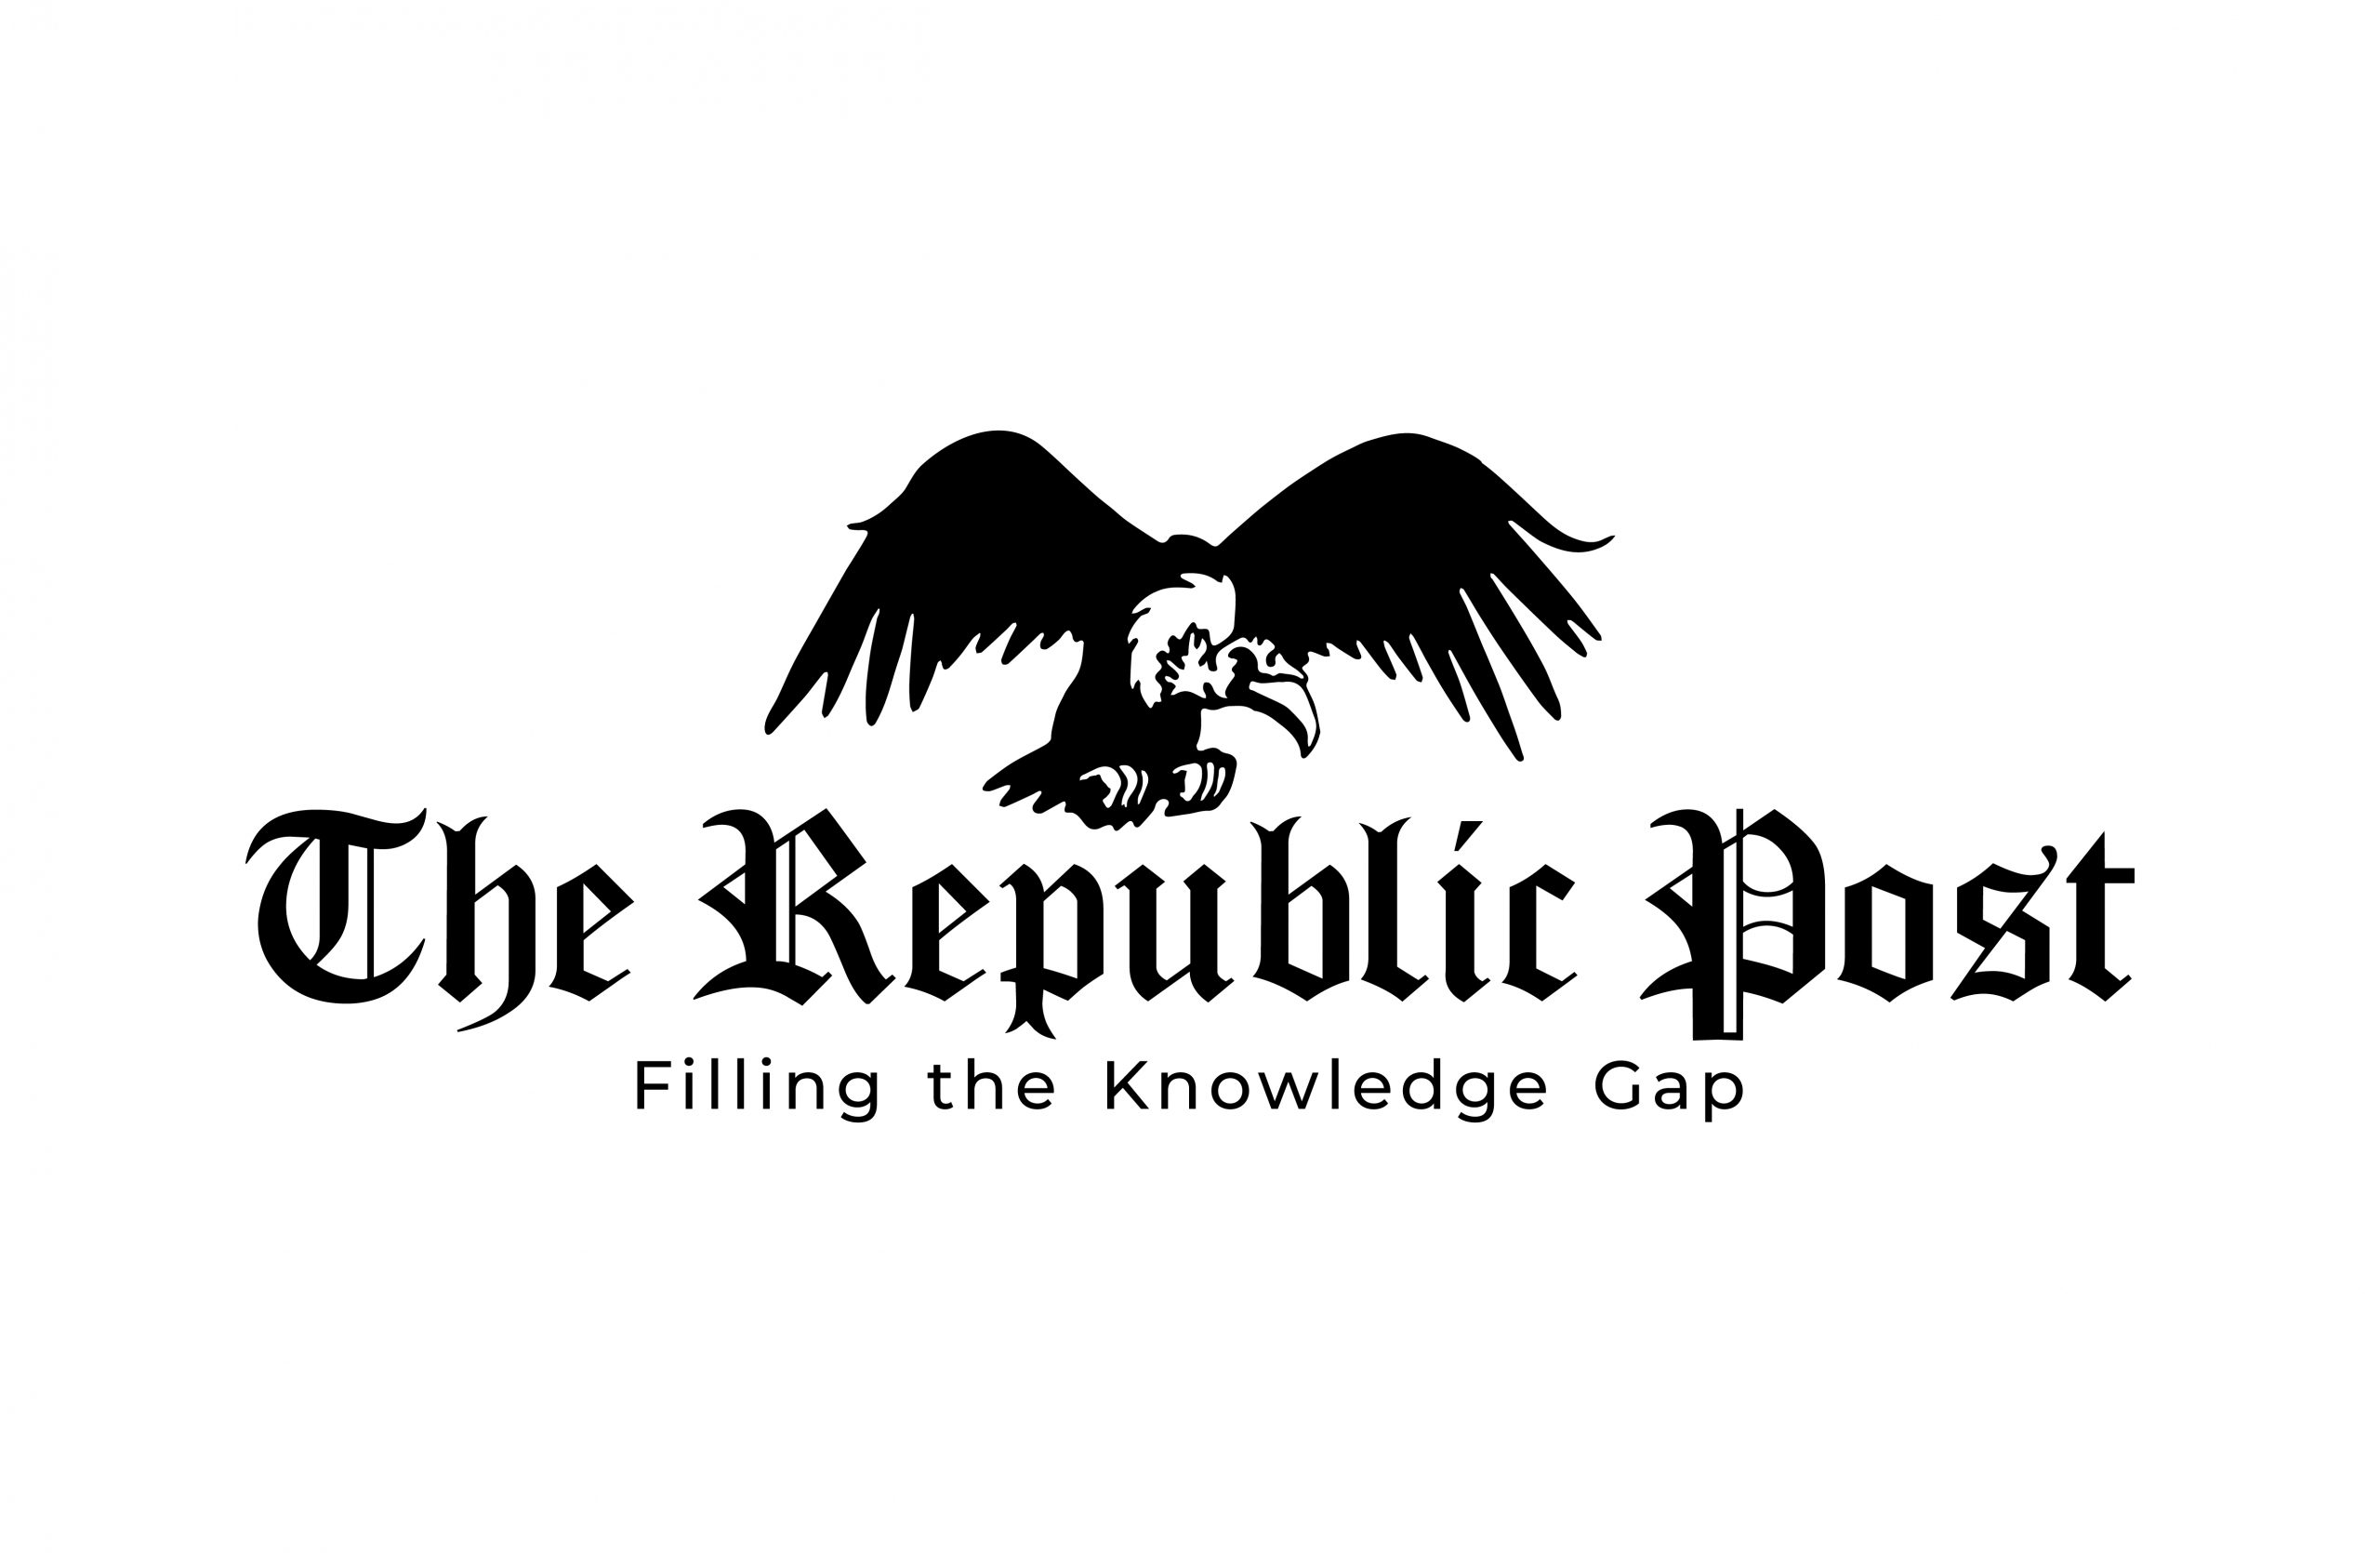 The Republic Post logo + tagline